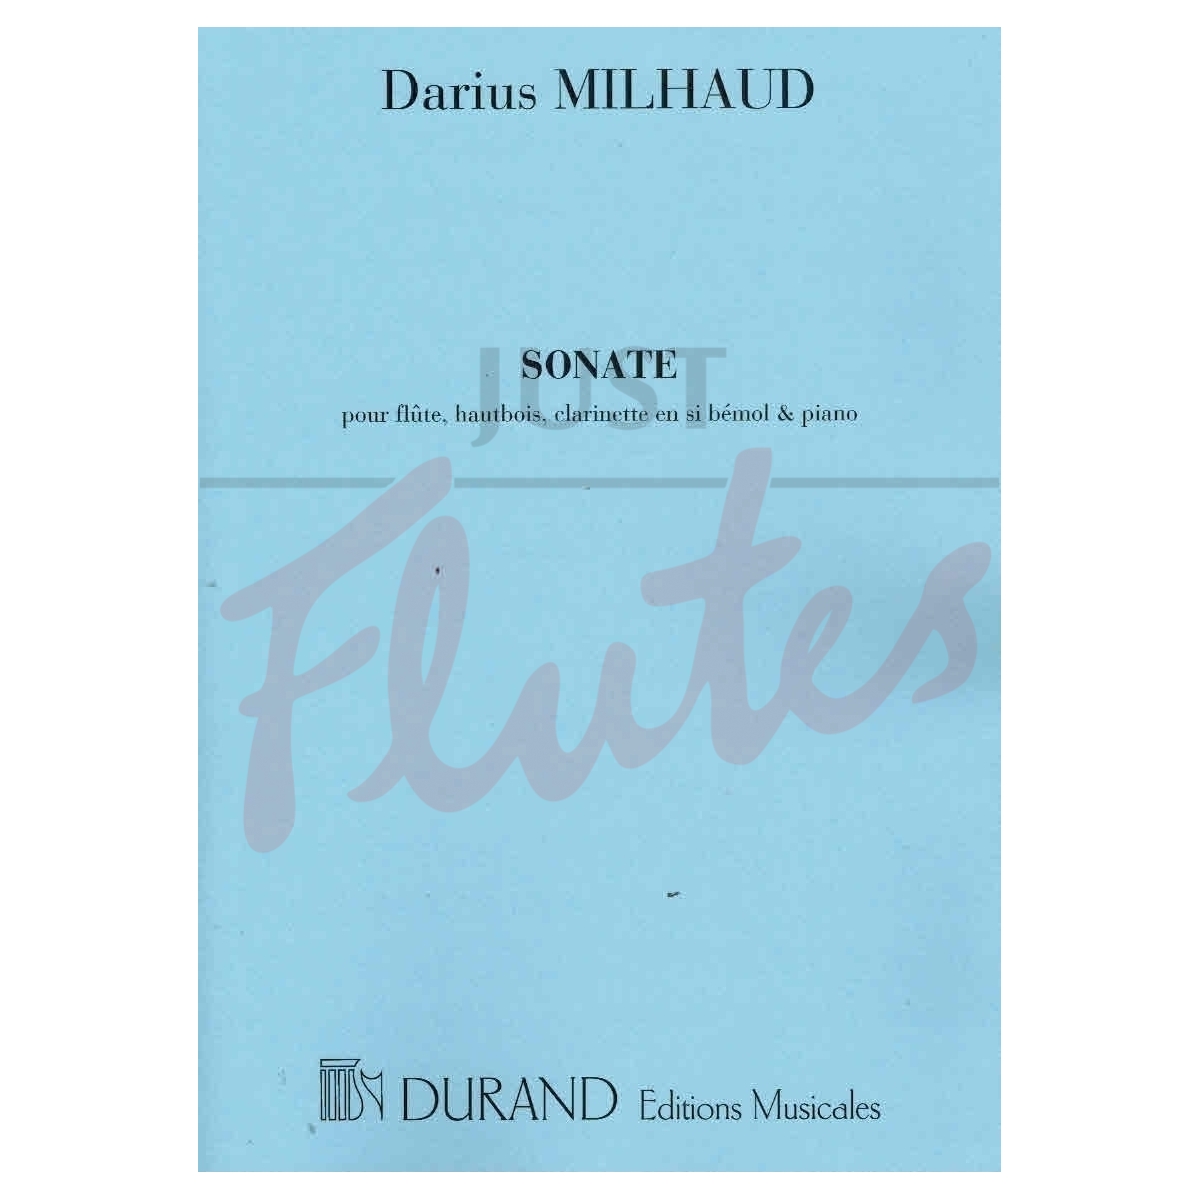 milhaud sonata flute oboe clarinet